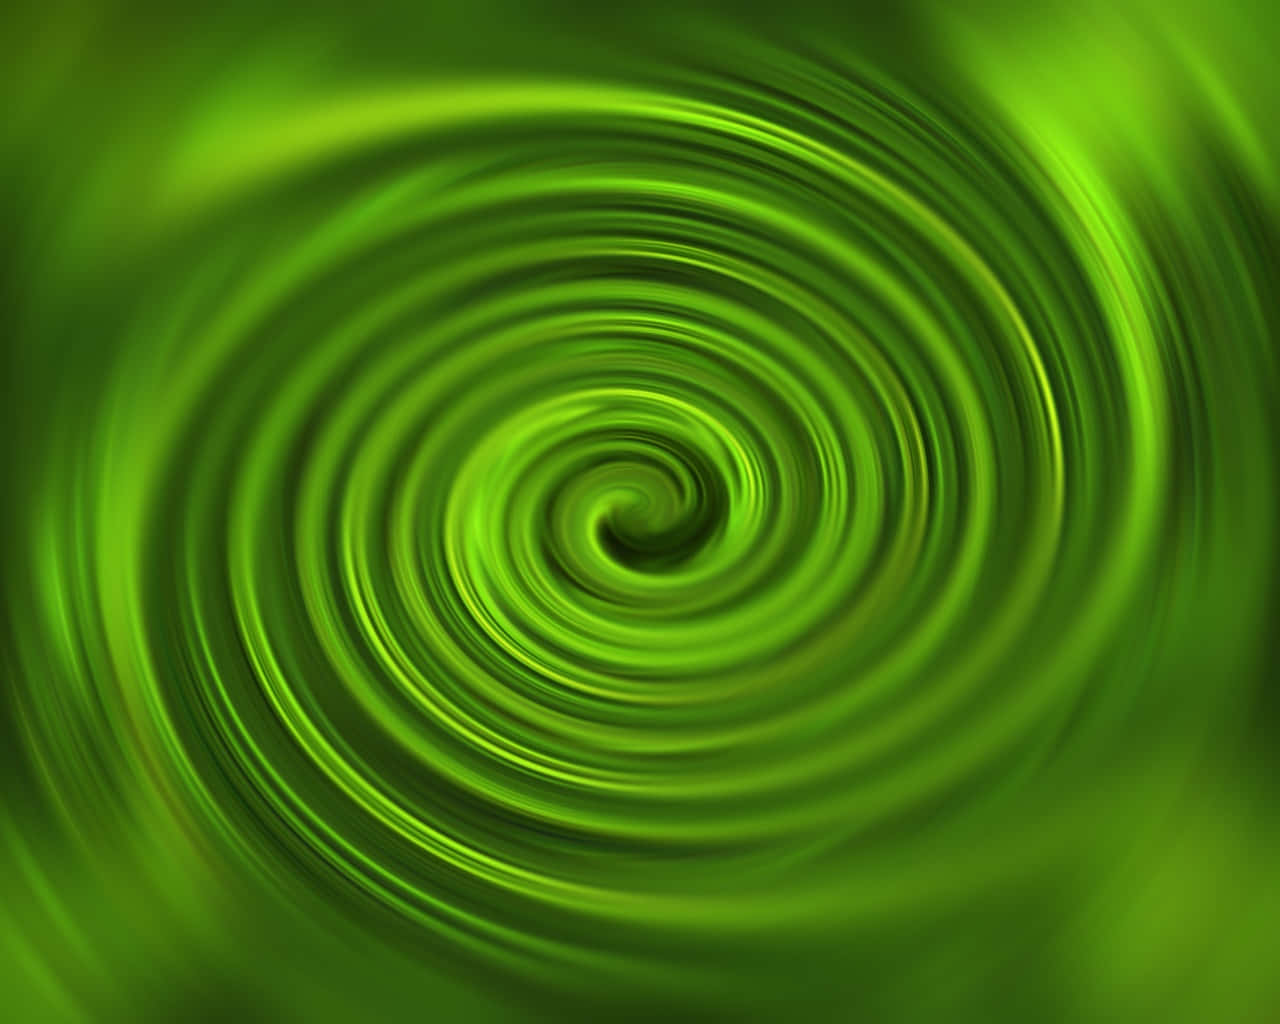 Grünehypnotisierende Wirbel Hintergrundillustration